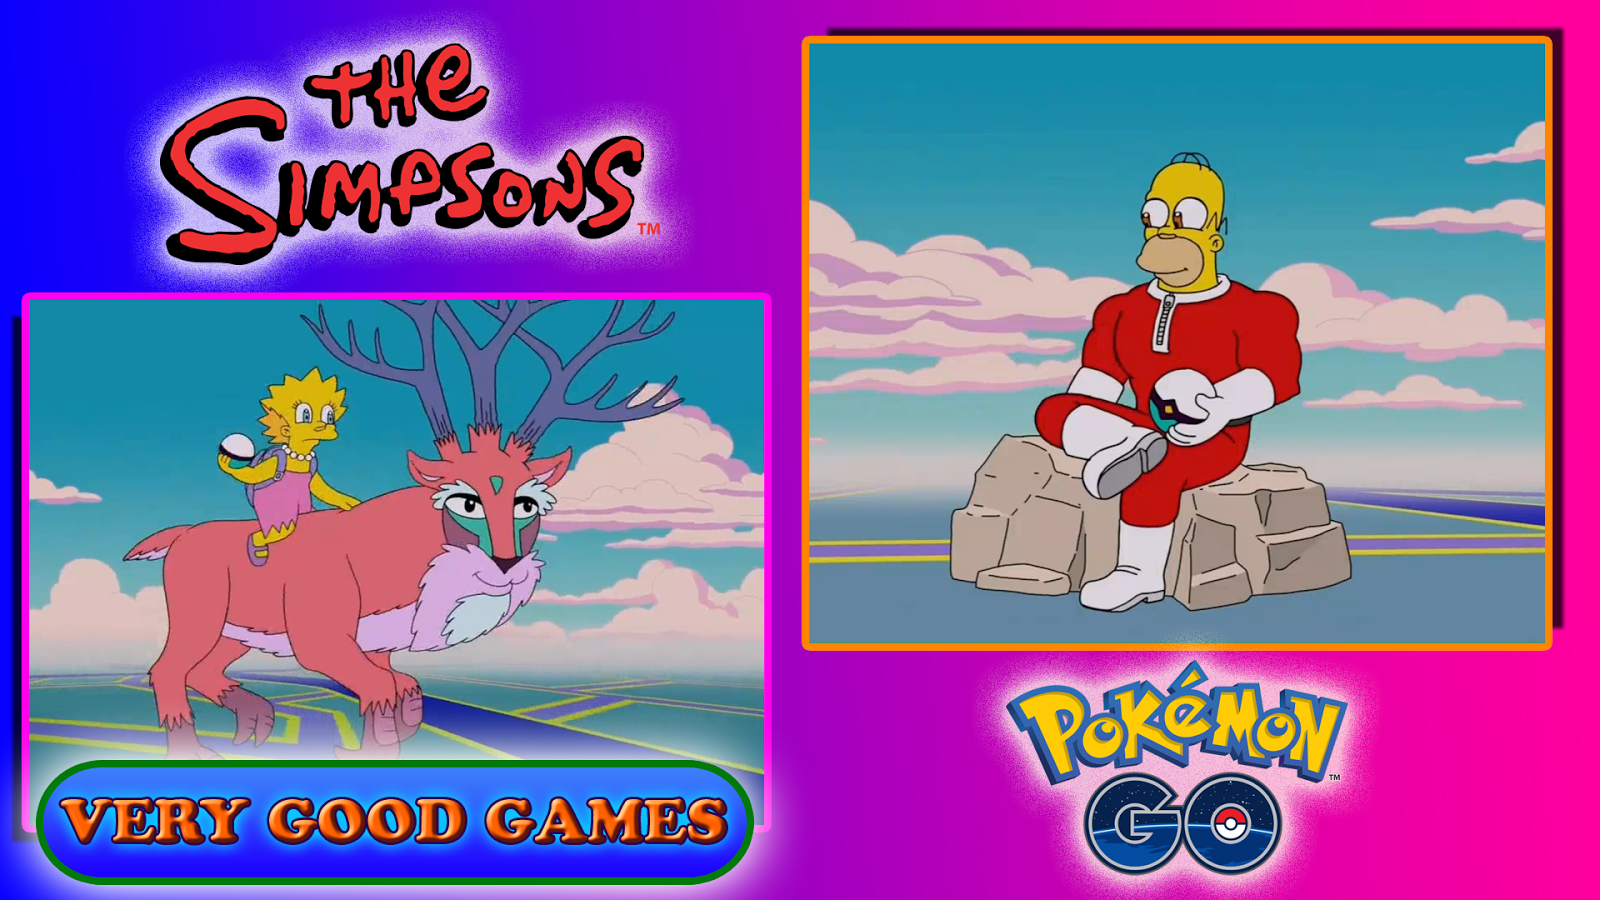 Simpsons and Pokemon Go